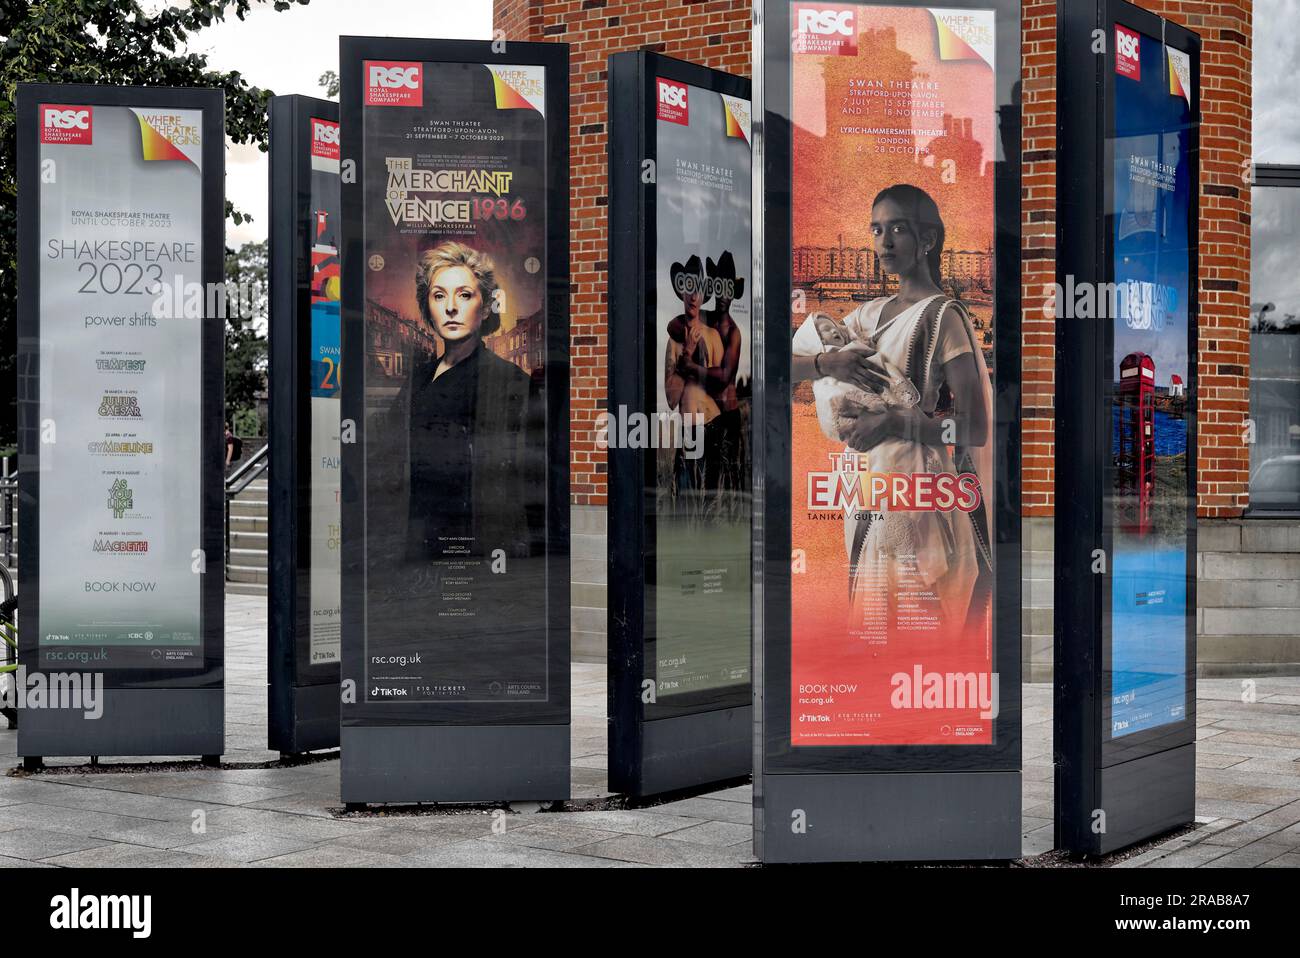 Manifesti teatrali della Royal Shakespeare Company che pubblicizzano rappresentazioni teatrali. Stratford Upon Avon, Inghilterra Regno Unito 2023 Foto Stock